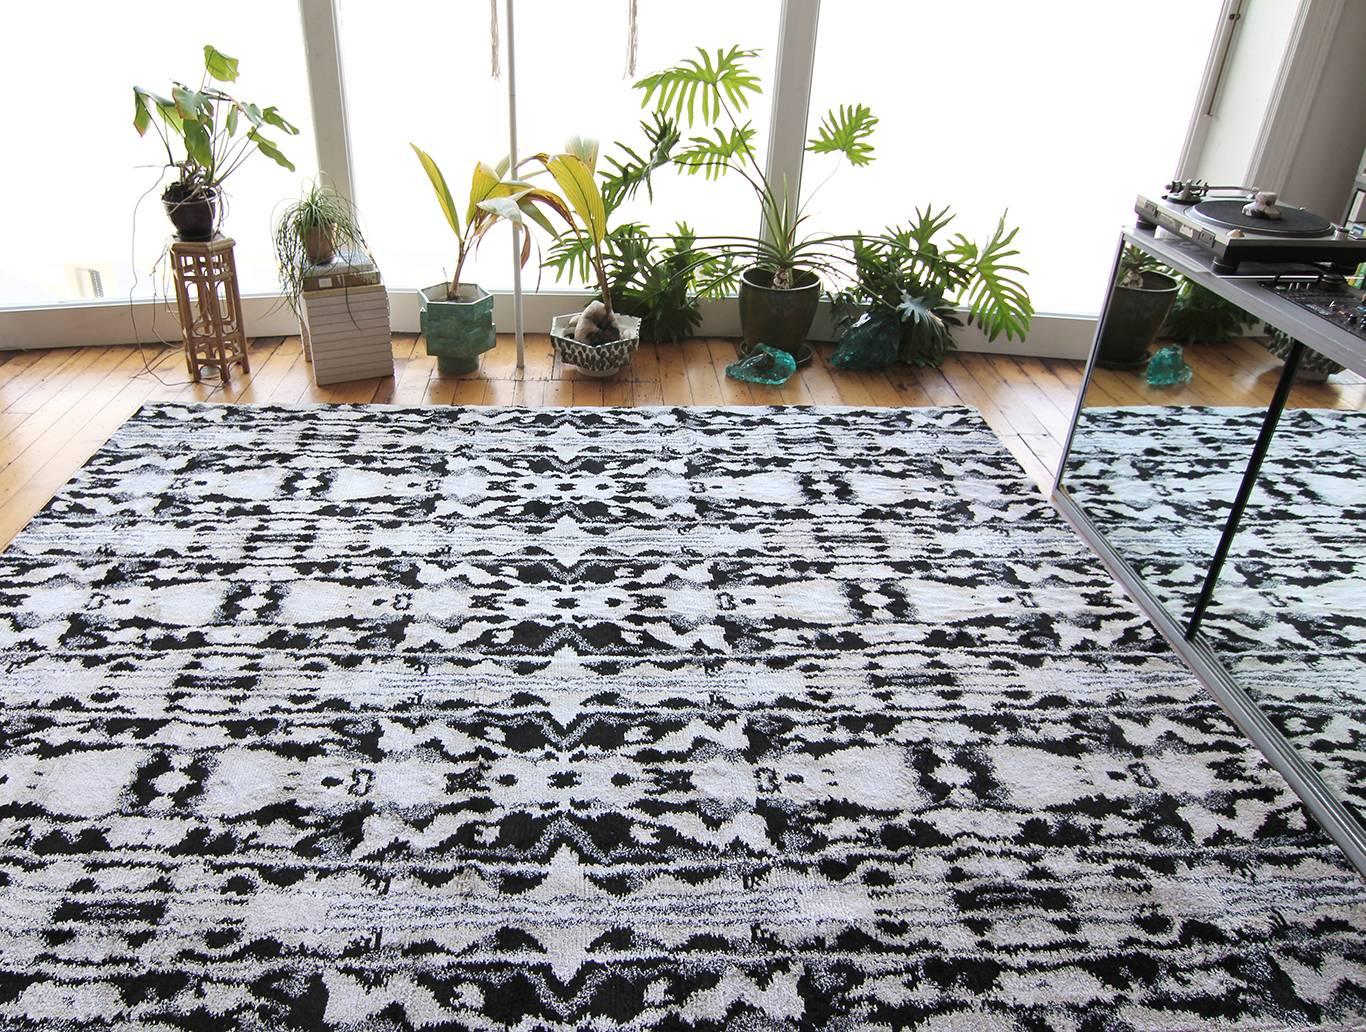 Motif du tapis : Biami, noir
Matériau : 100% soie
Qualité : tissage Lulu semi-hirsute, poils de 30 mm, noué à la main
Taille : 8' x 10'
Fabriqué au Népal
Conçu par Eskayel.
 